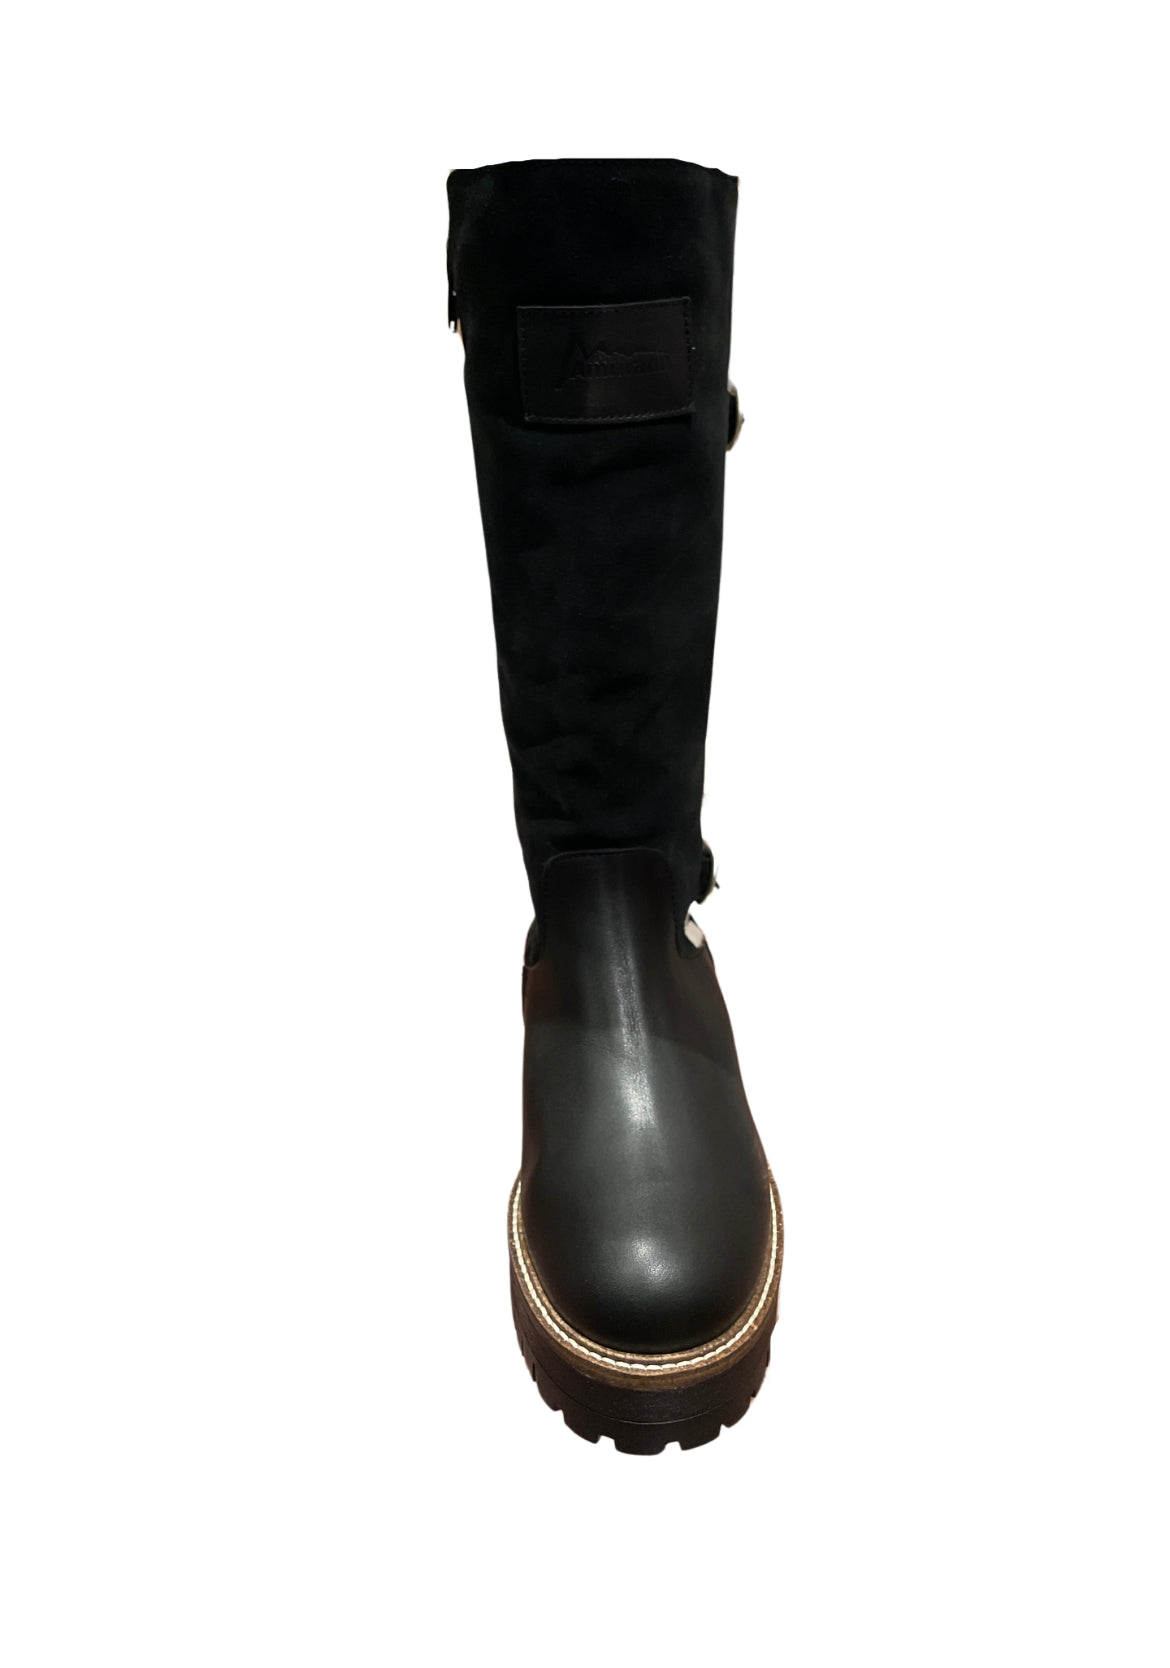 Ammann Erstfeld Tall Black Leather Boots w/ Calf Hair & Buckle